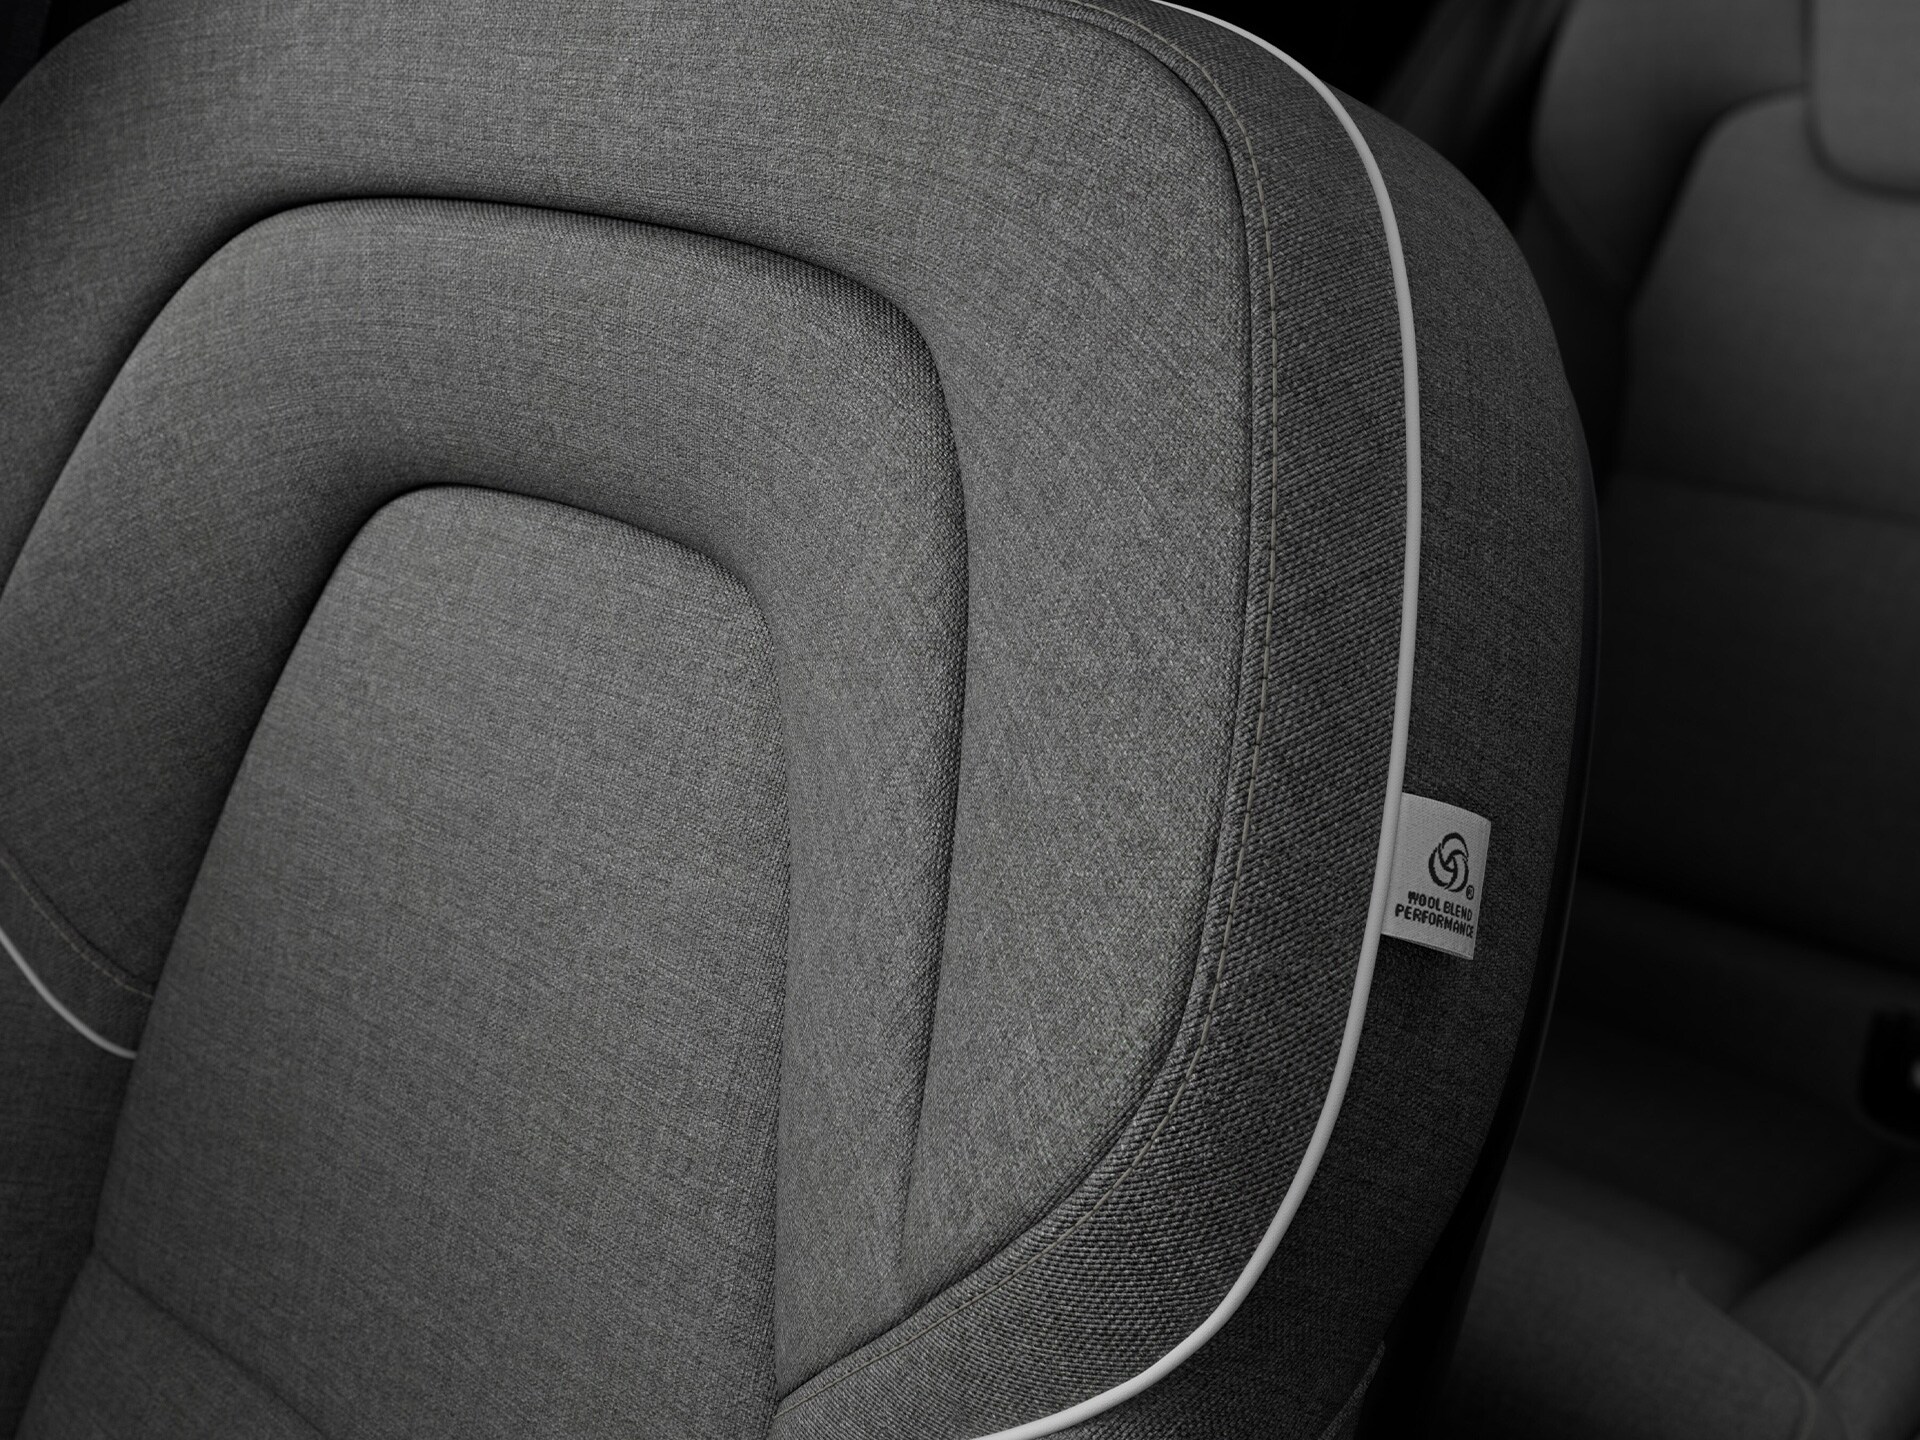 La lavorazione artigianale e i materiali naturali definiscono gli interni della Volvo V90 Recharge.